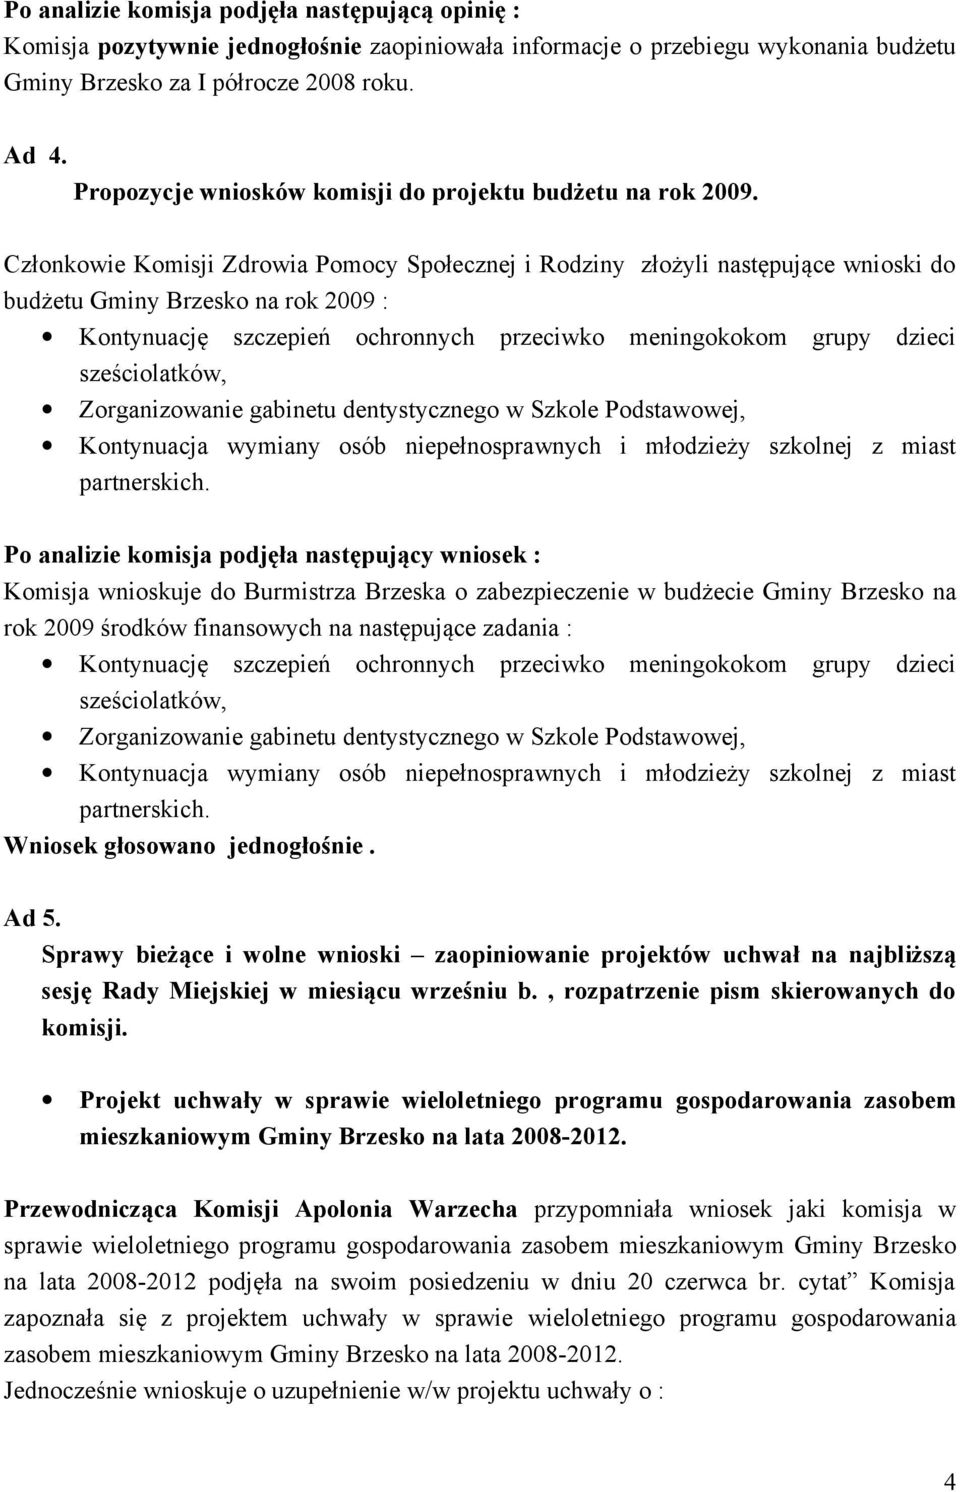 Członkowie Komisji Zdrowia Pomocy Społecznej i Rodziny złożyli następujące wnioski do budżetu Gminy Brzesko na rok 2009 : Kontynuację szczepień ochronnych przeciwko meningokokom grupy dzieci